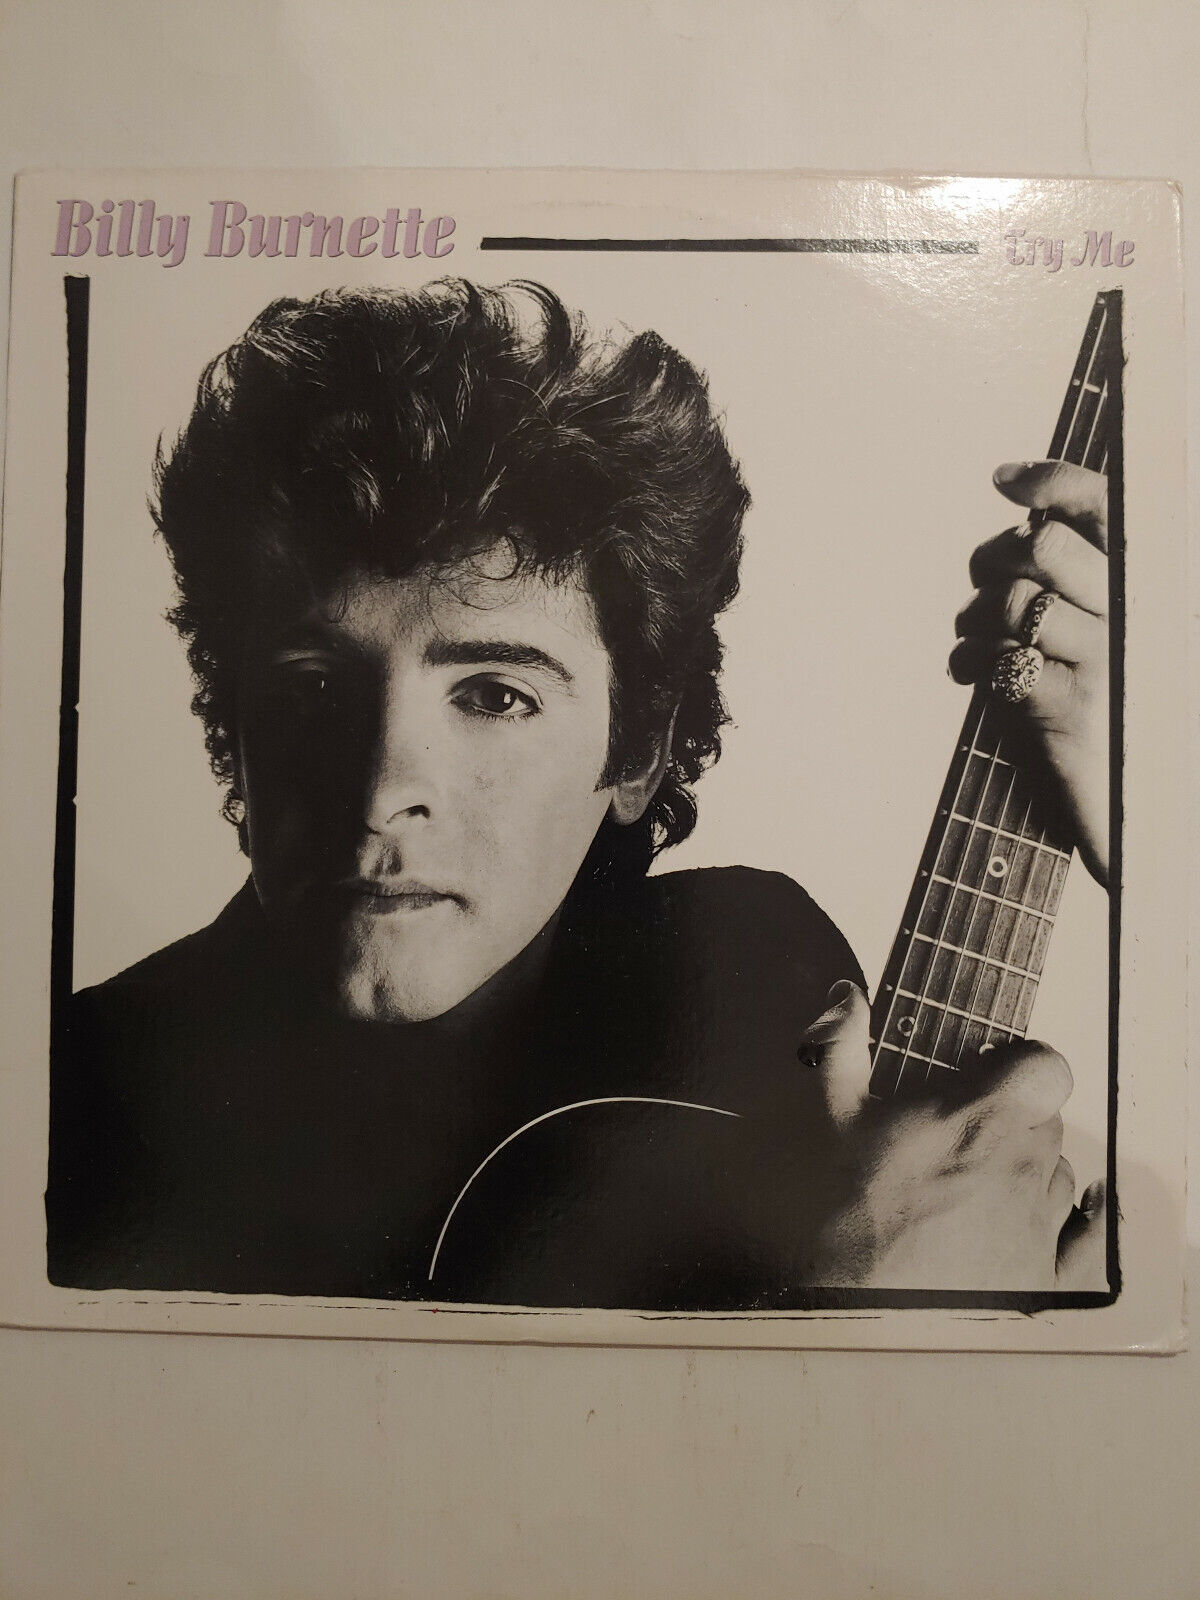 Try Me by Billy Burnette (VINYL LP)